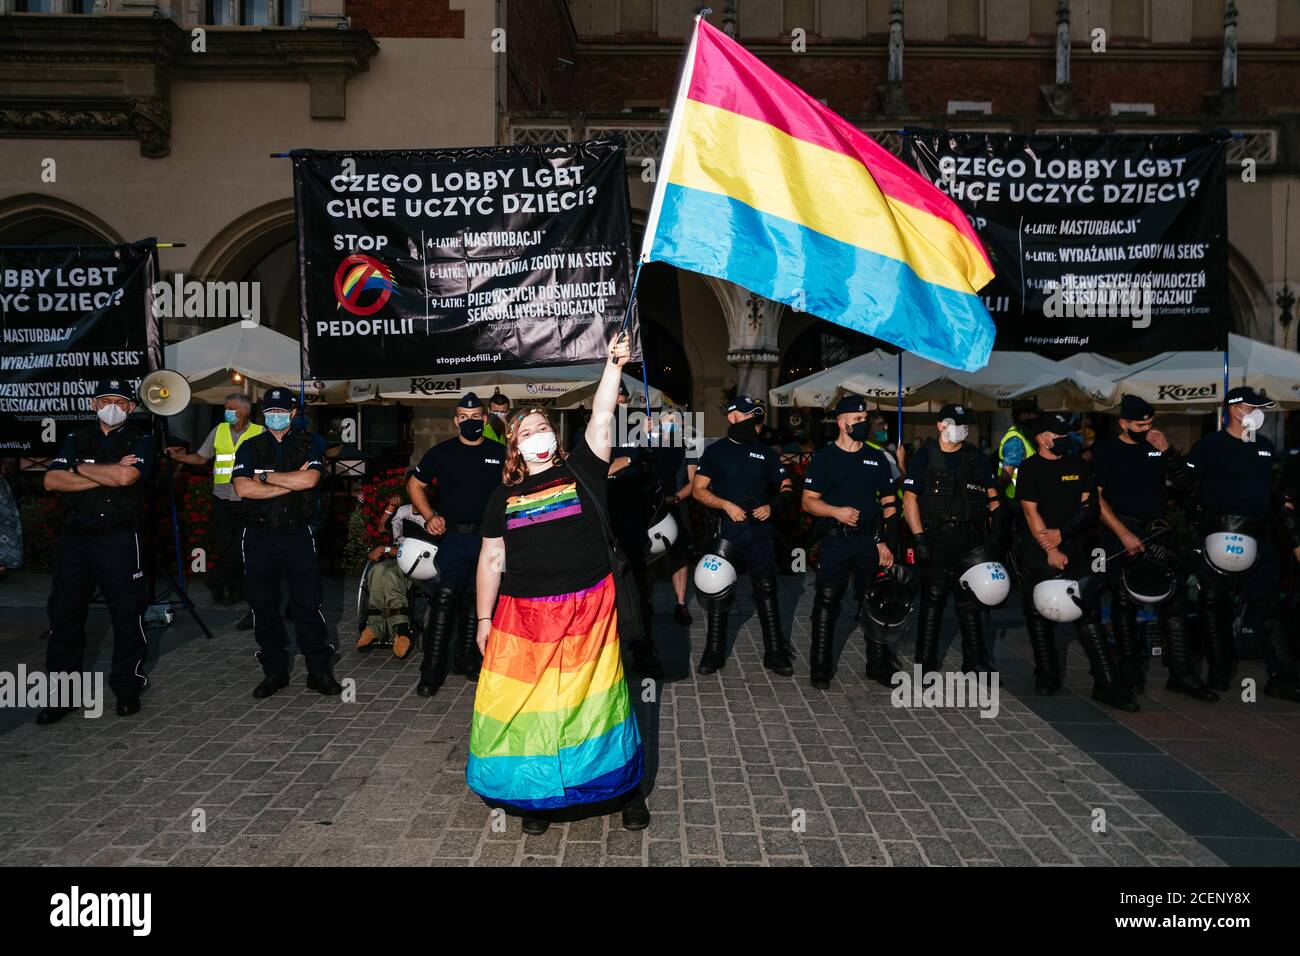 Un membro della comunità LGBTQ ha ondato una bandiera di orgoglio arcobaleno durante il marzo.la marcia annuale di uguaglianza, conosciuta anche come Pride Parade, ha attratto un numero particolarmente grande di partecipanti, così come due contromunazioni. In Polonia, recentemente si è svolto un acceso dibattito pubblico tra sostenitori della tolleranza, con una visione di centro o di sinistra, e circoli conservatori, nazionalisti e cattolici di destra, che stanno esprimendo la loro avversione alla comunità LGBT in modo sempre più spietato. Gli oppositori della comunità LGBT lo accusano di cercare di realizzare una rivoluzione morale. Quelli a favore di Foto Stock